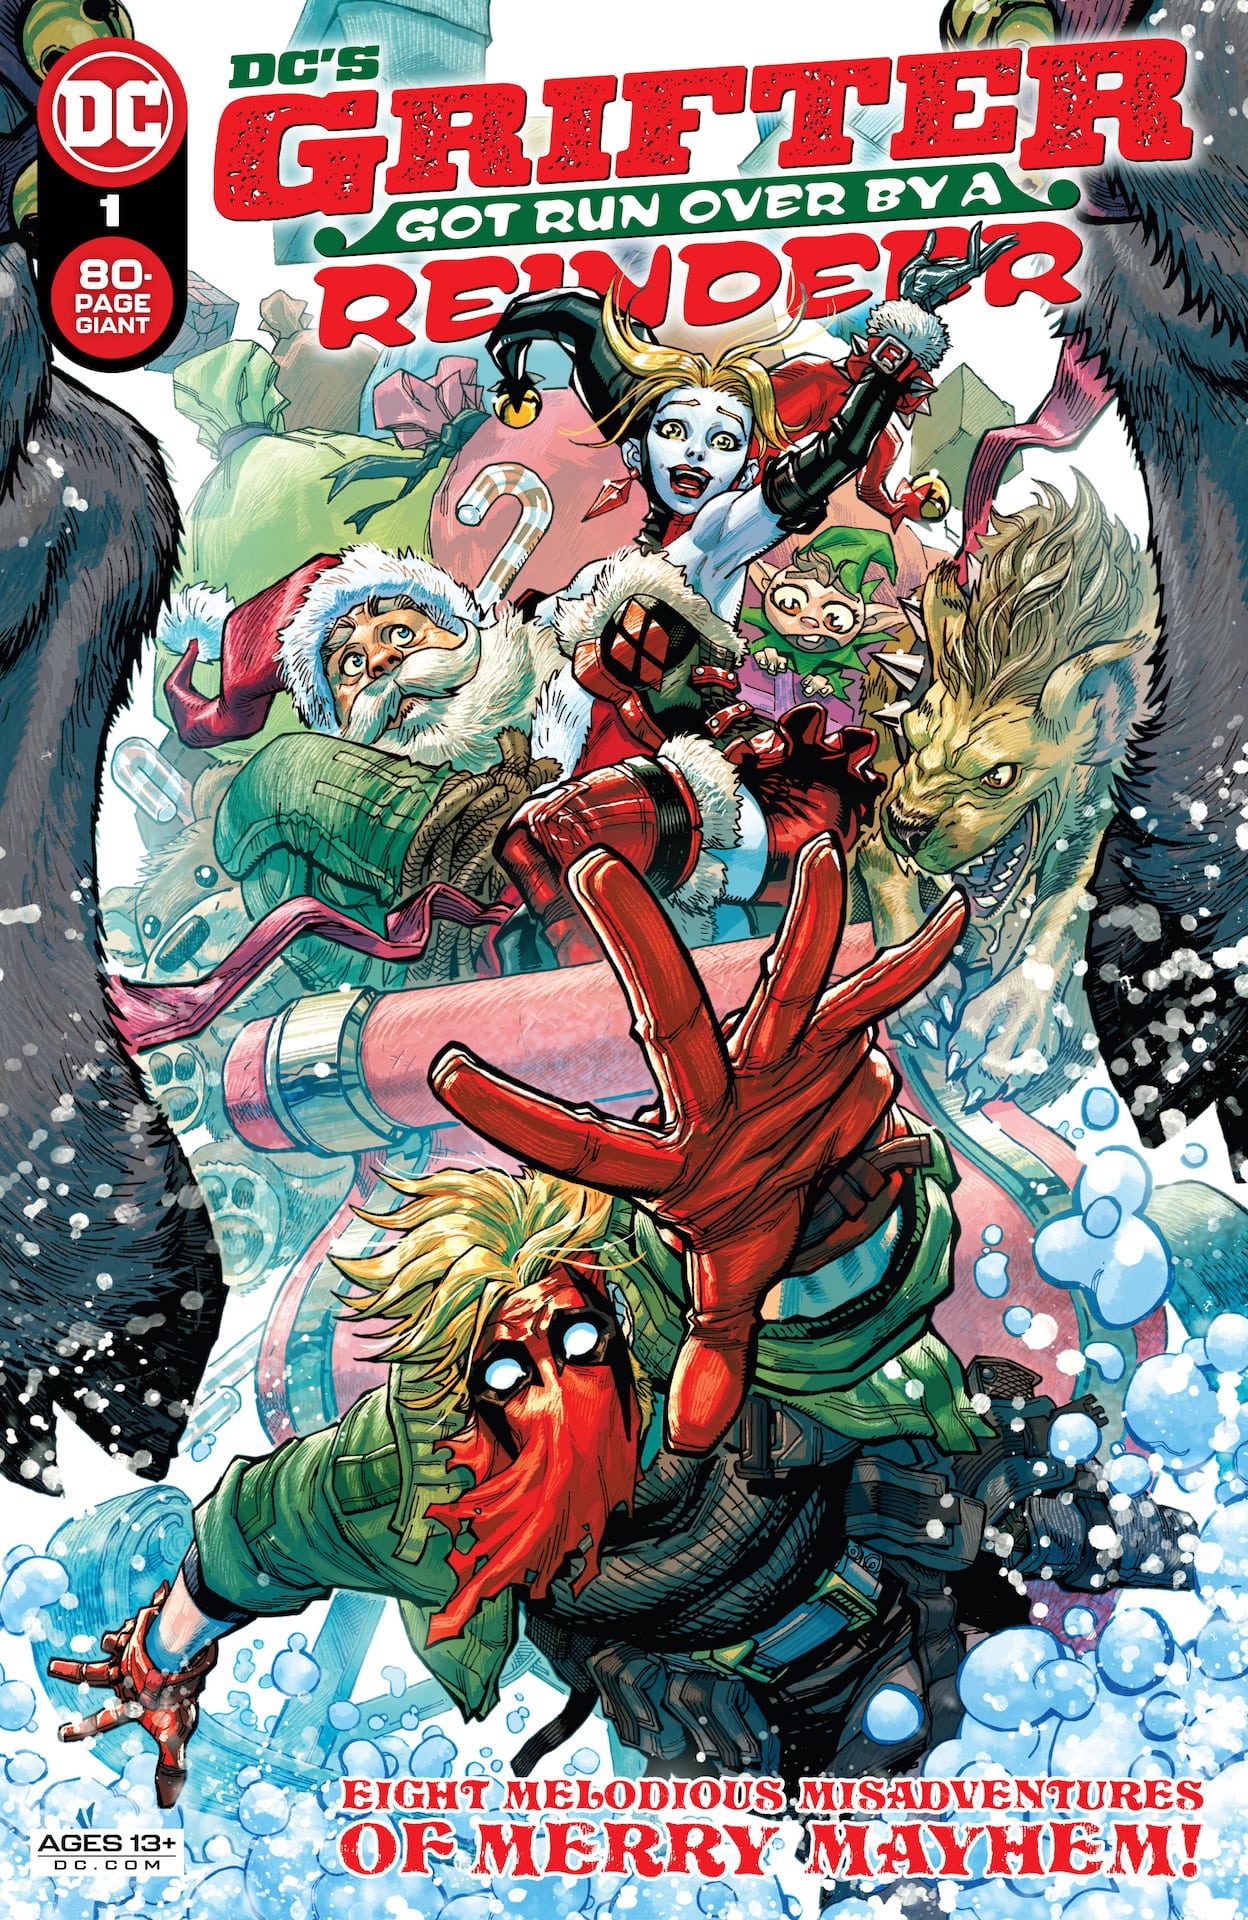 DC Preview: DC's Grifter Got Run Over by a Reindeer #1